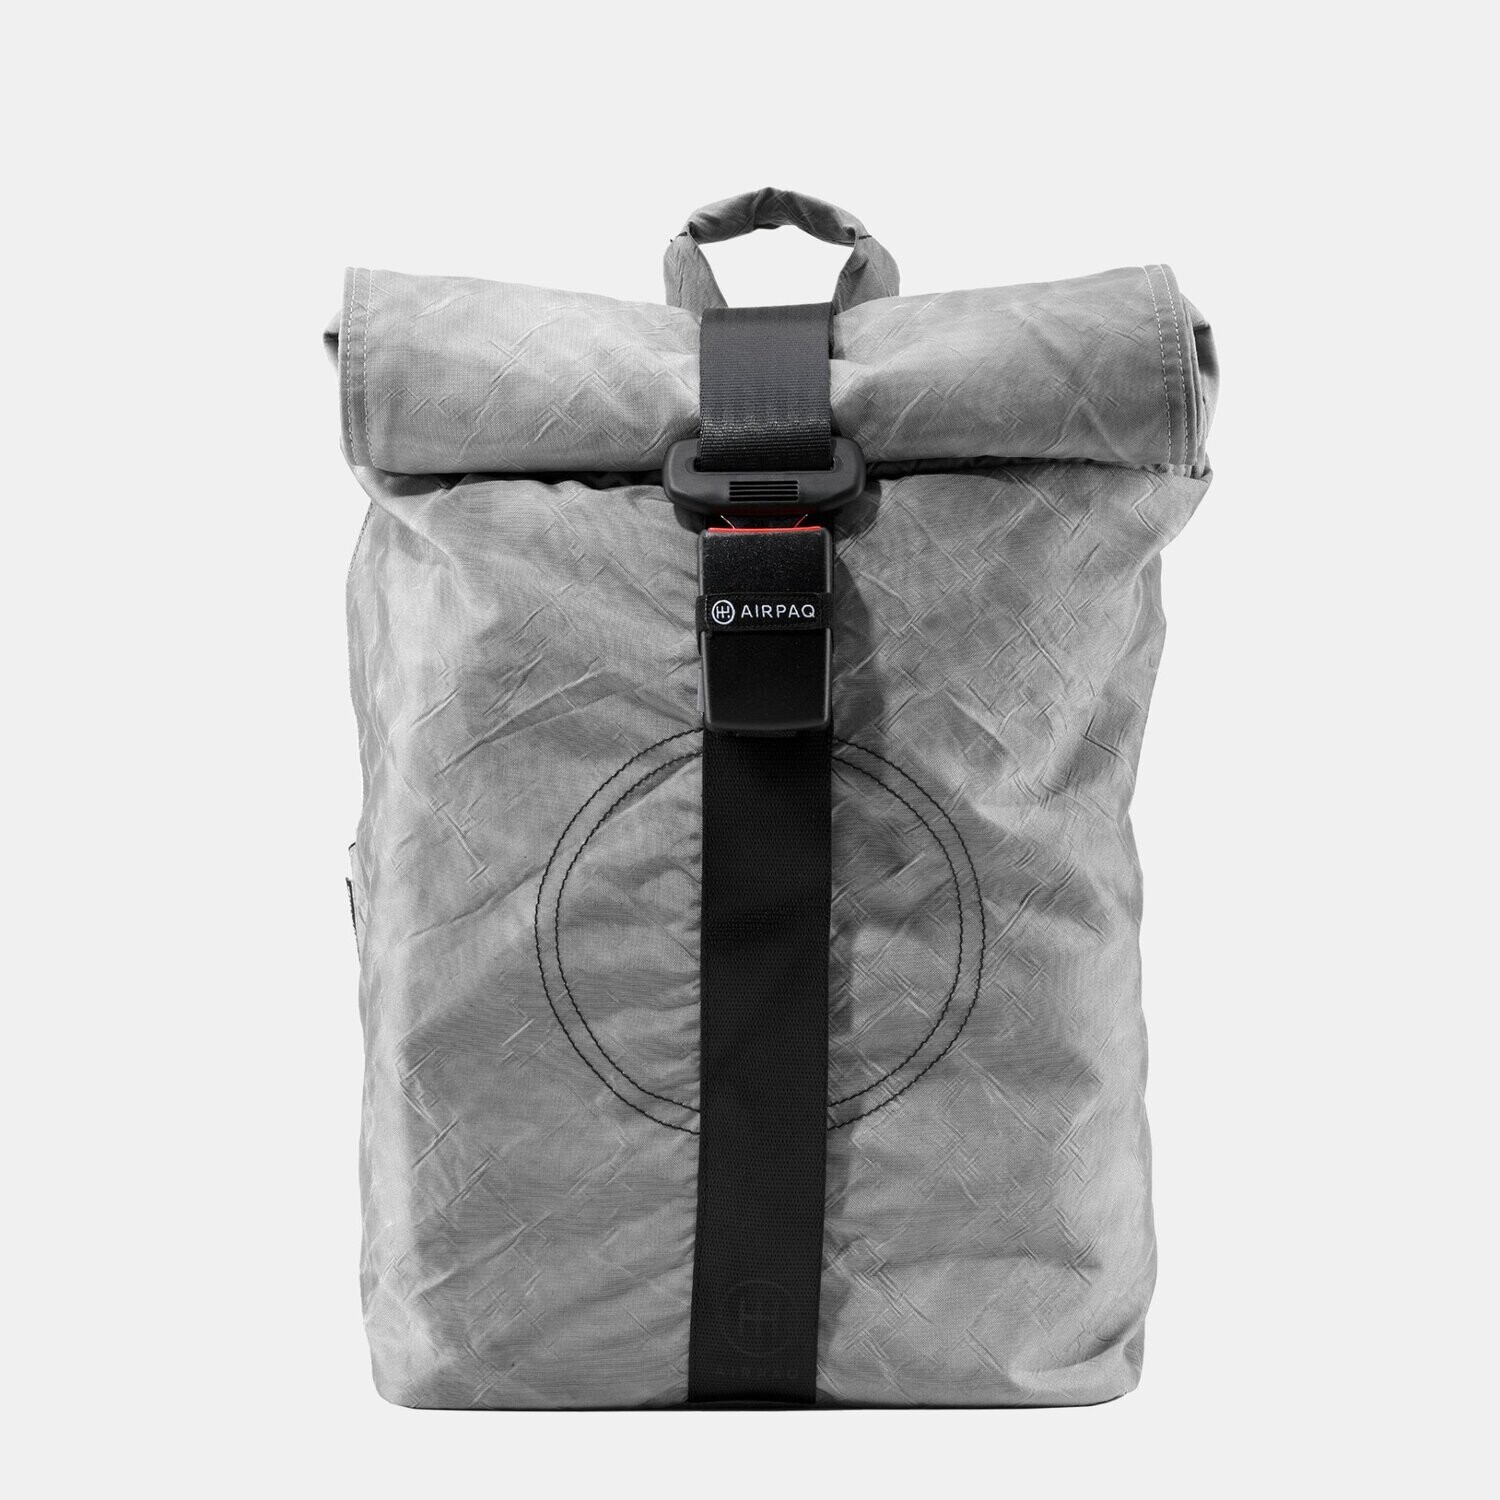 Airpaq Rolltop Rucksack, Farbe: grau, Größe: 21 l